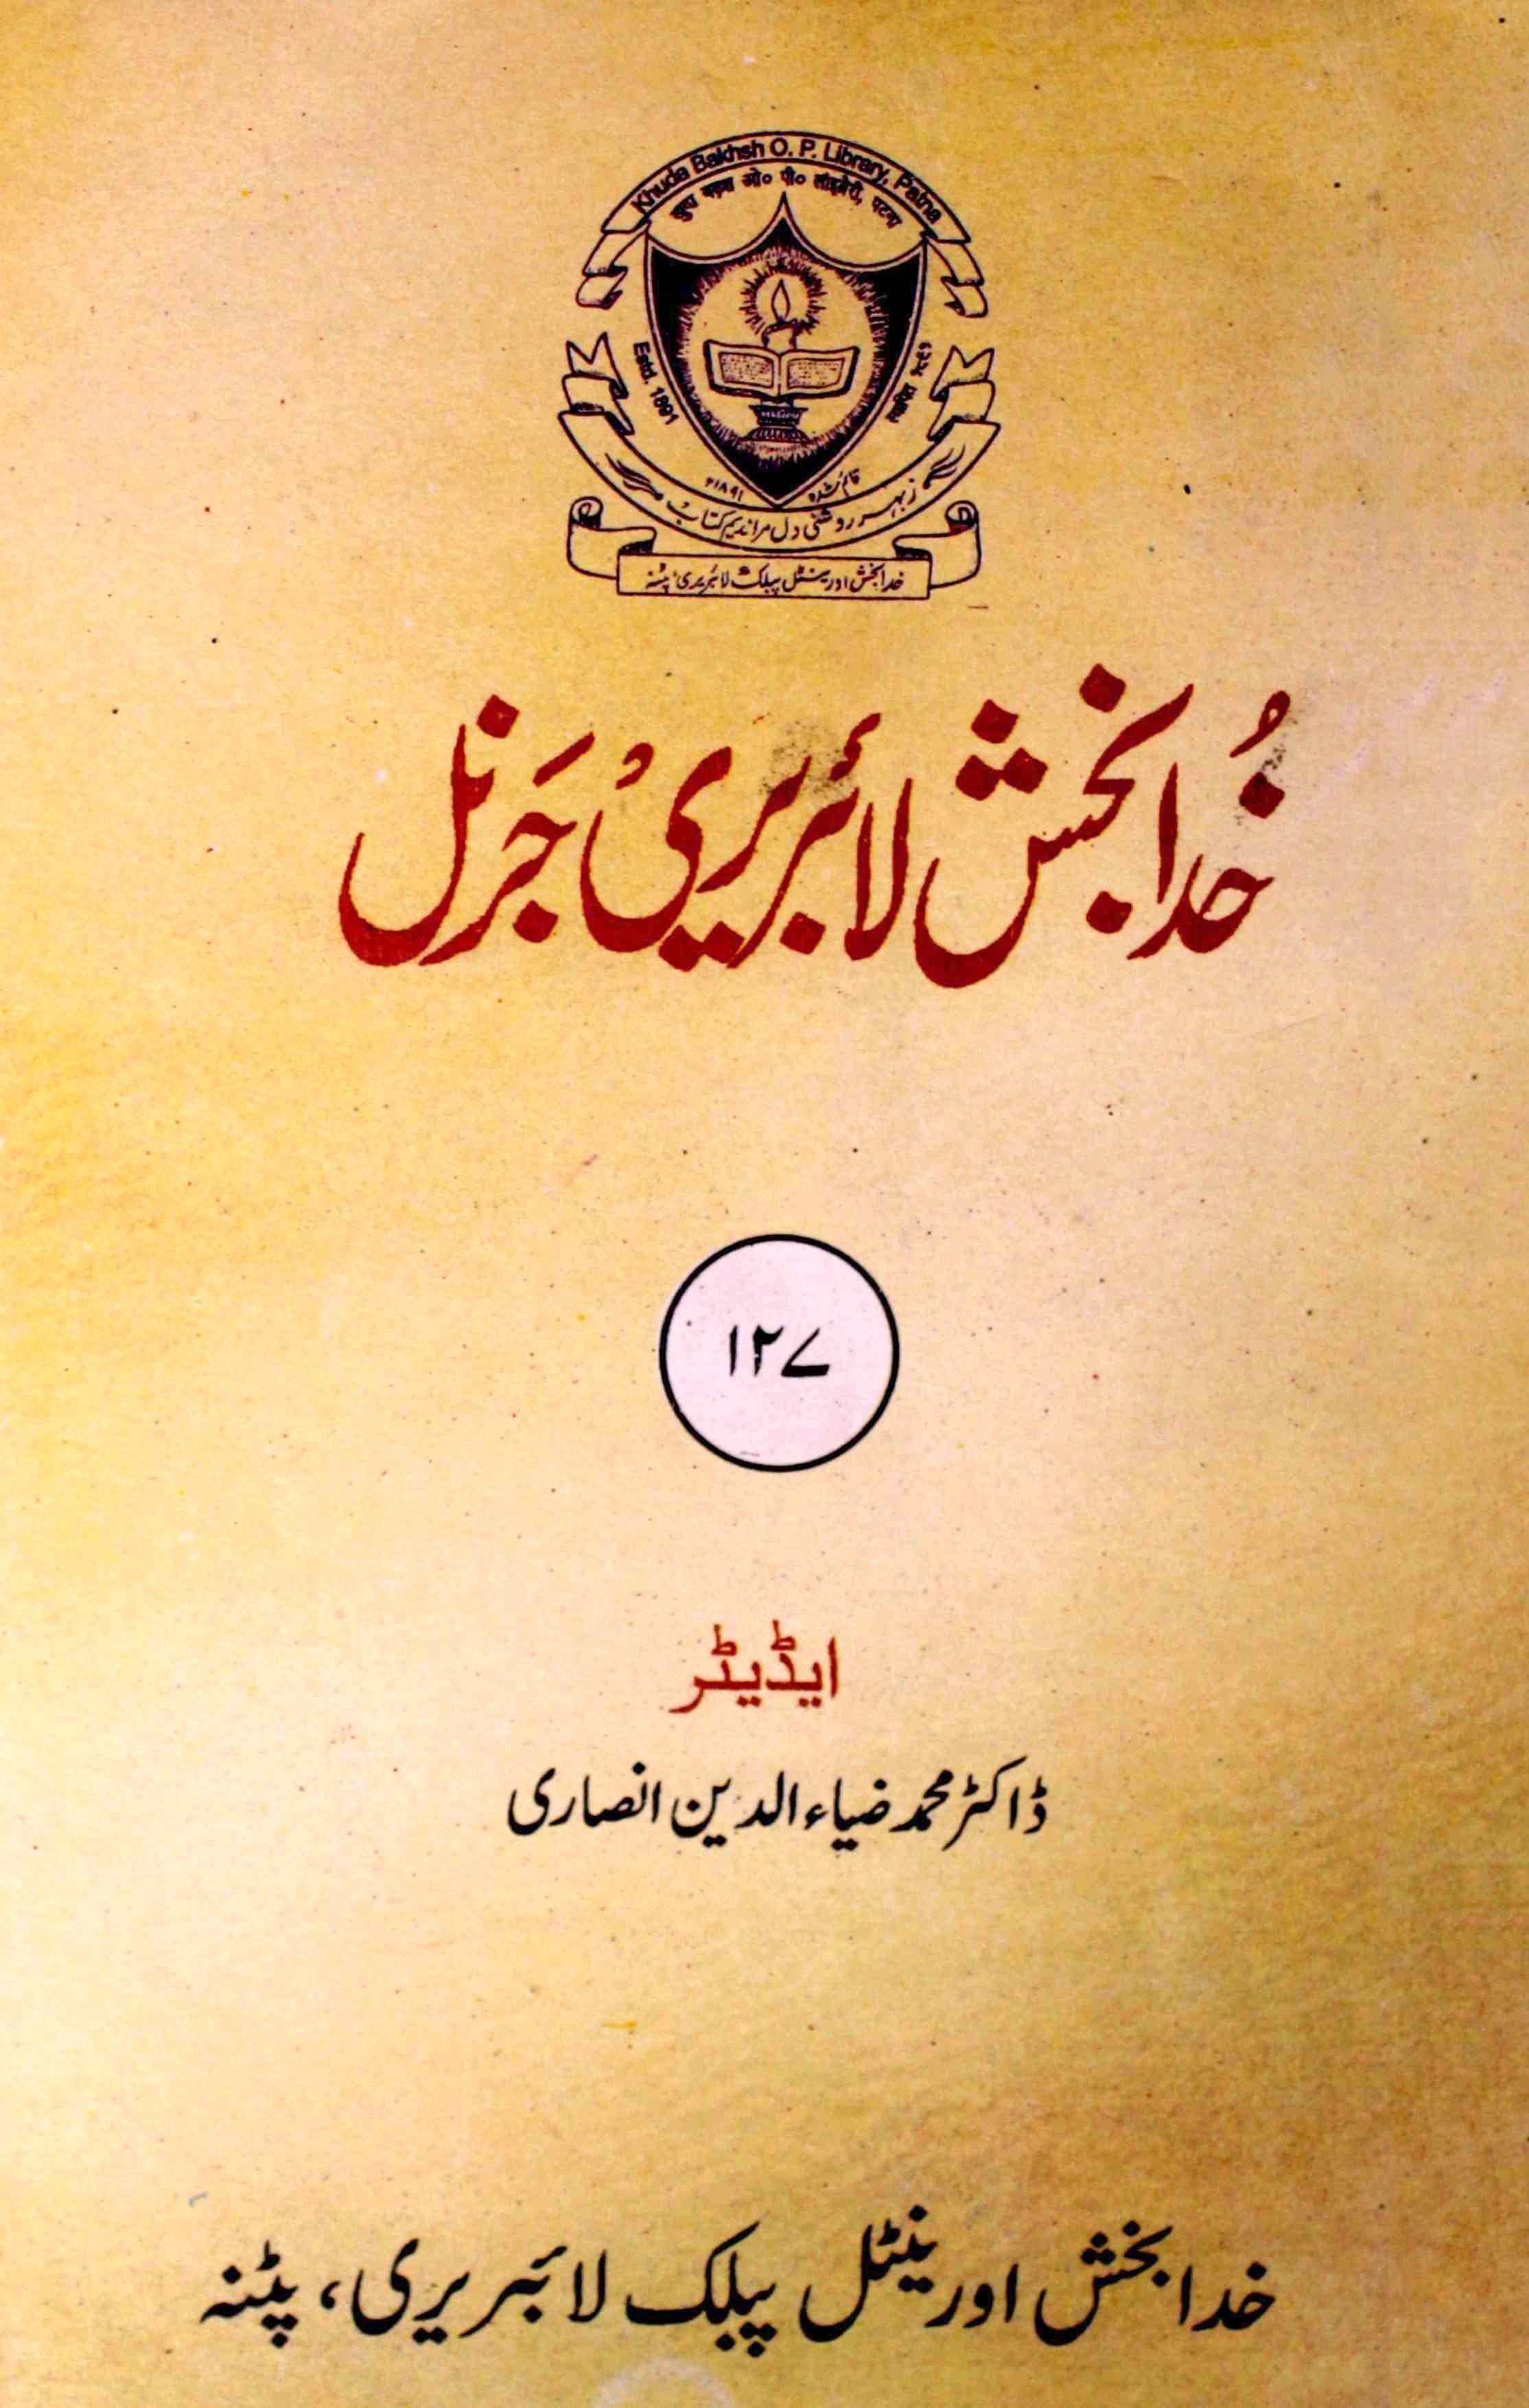 Khuda Bakhsh library Journal 127